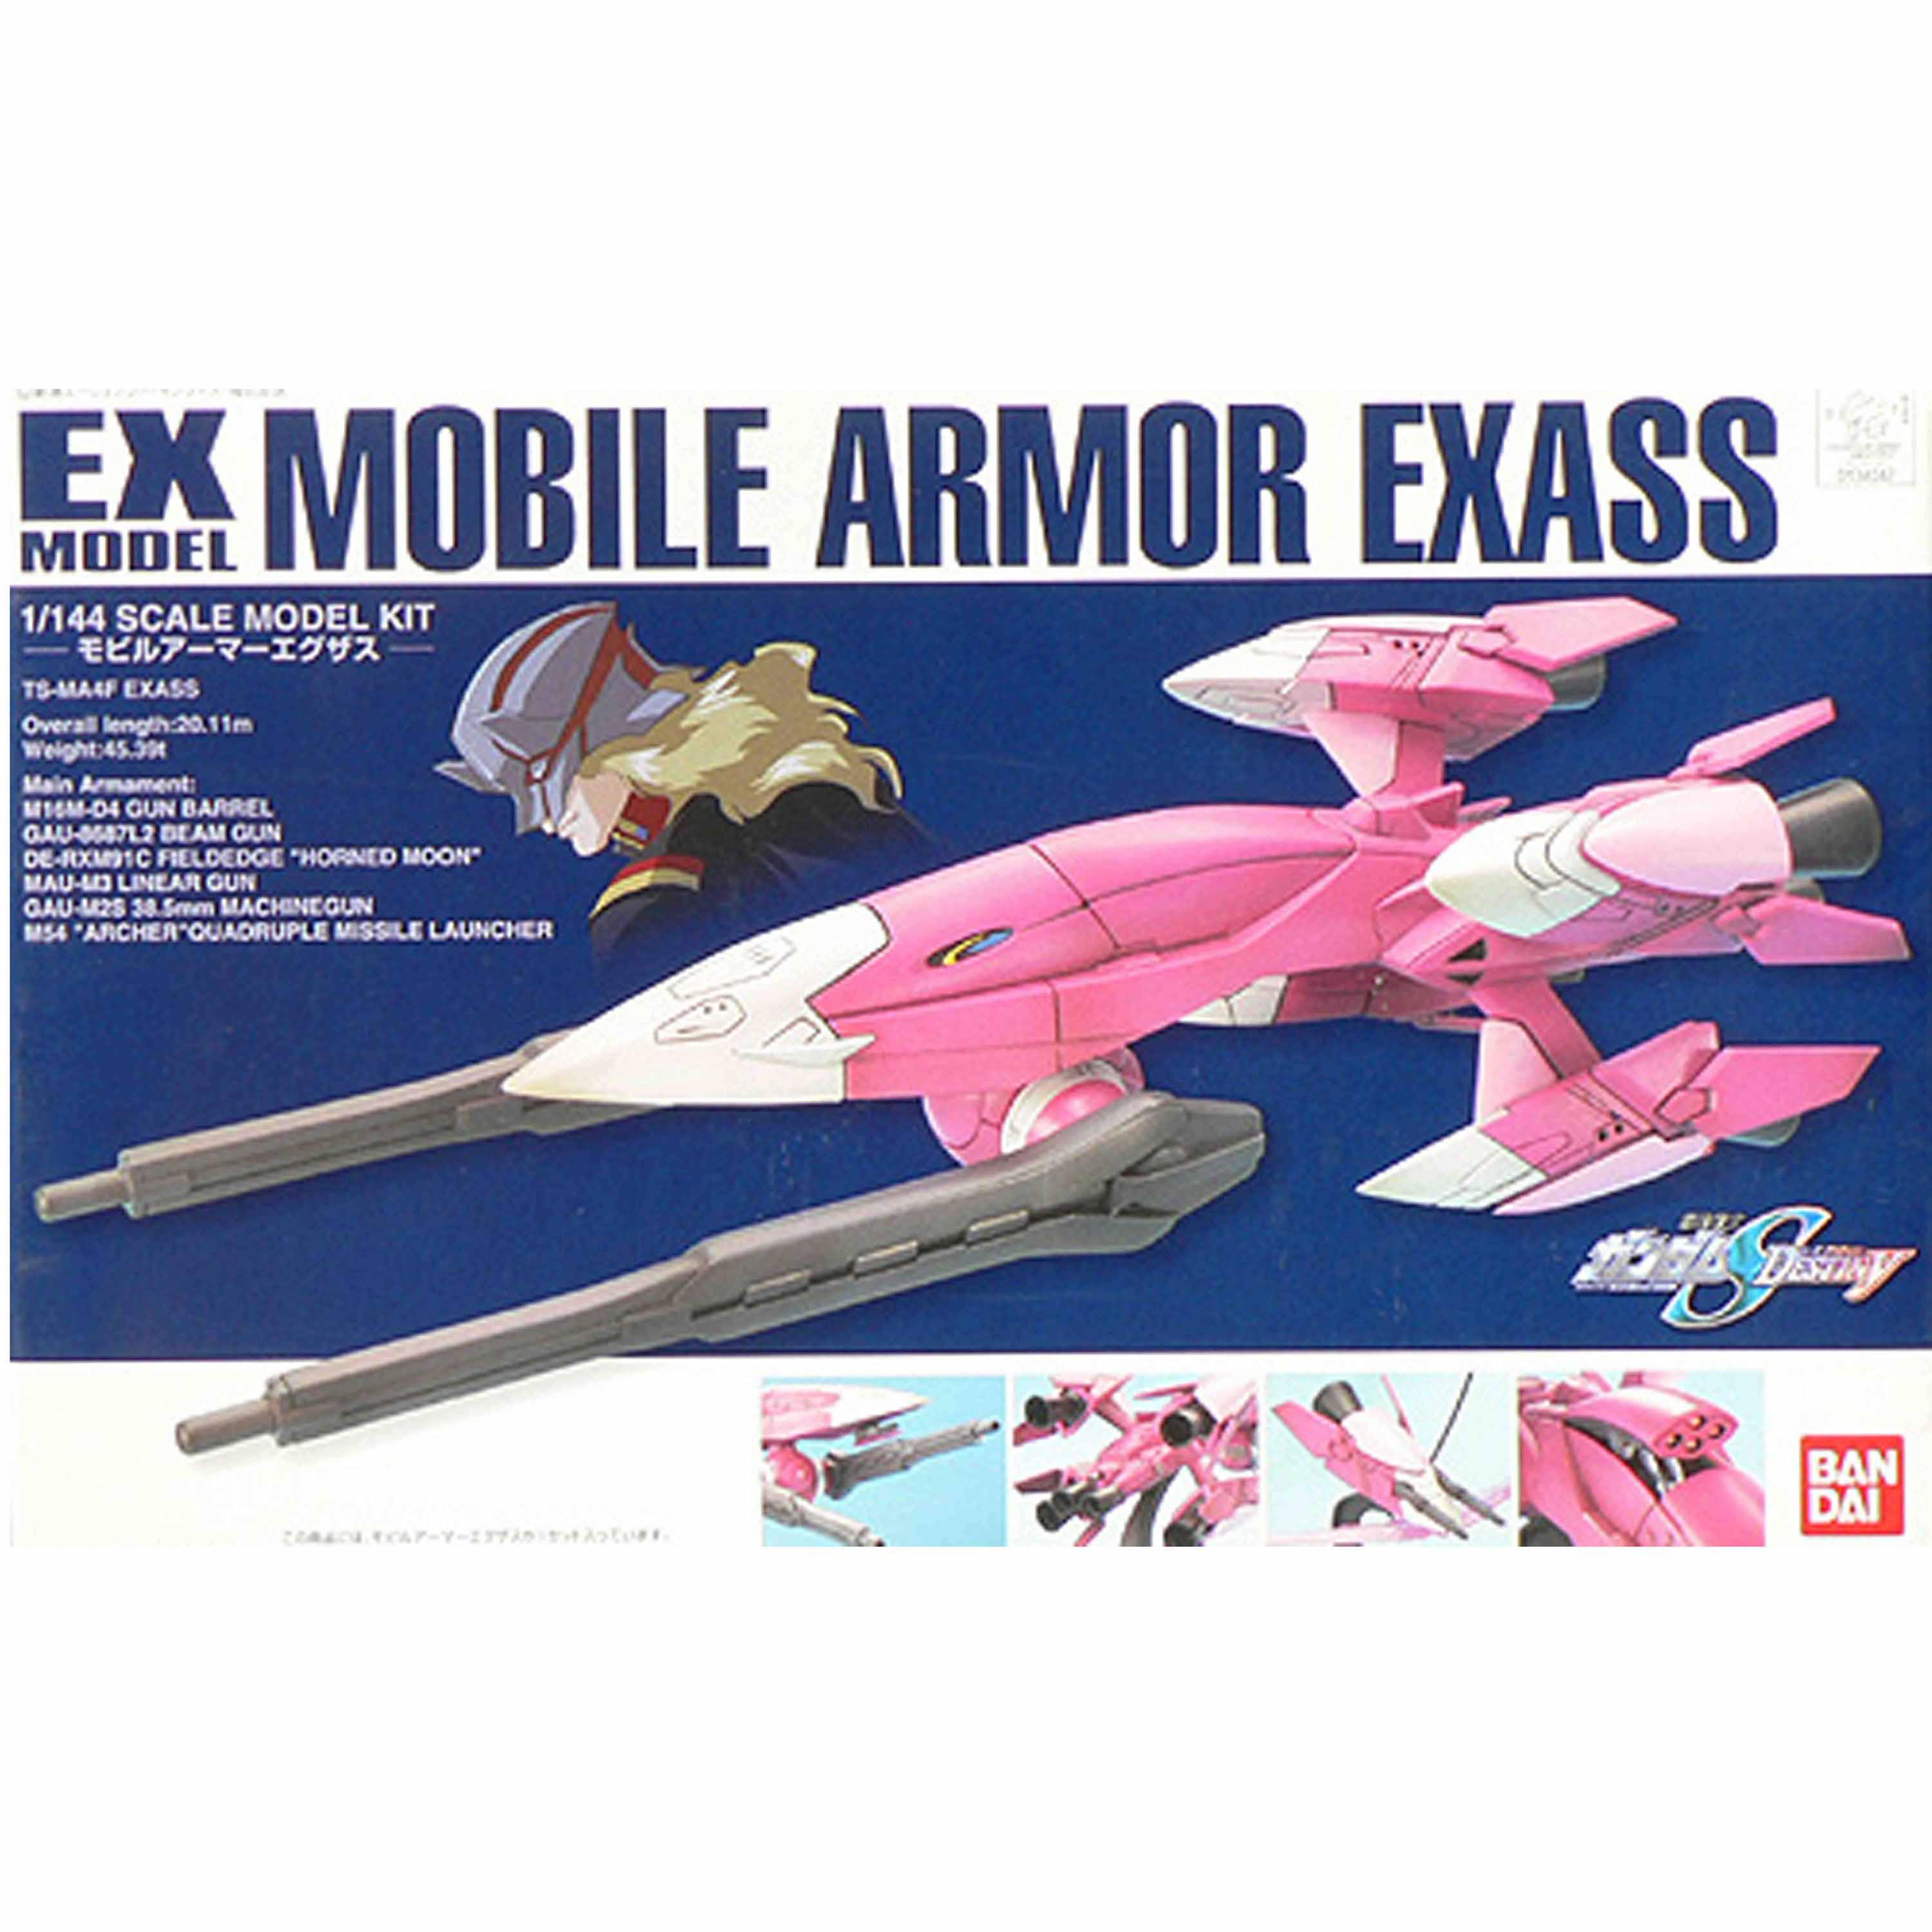 EX-22 1/144 MOBILE ARMOR EXASS